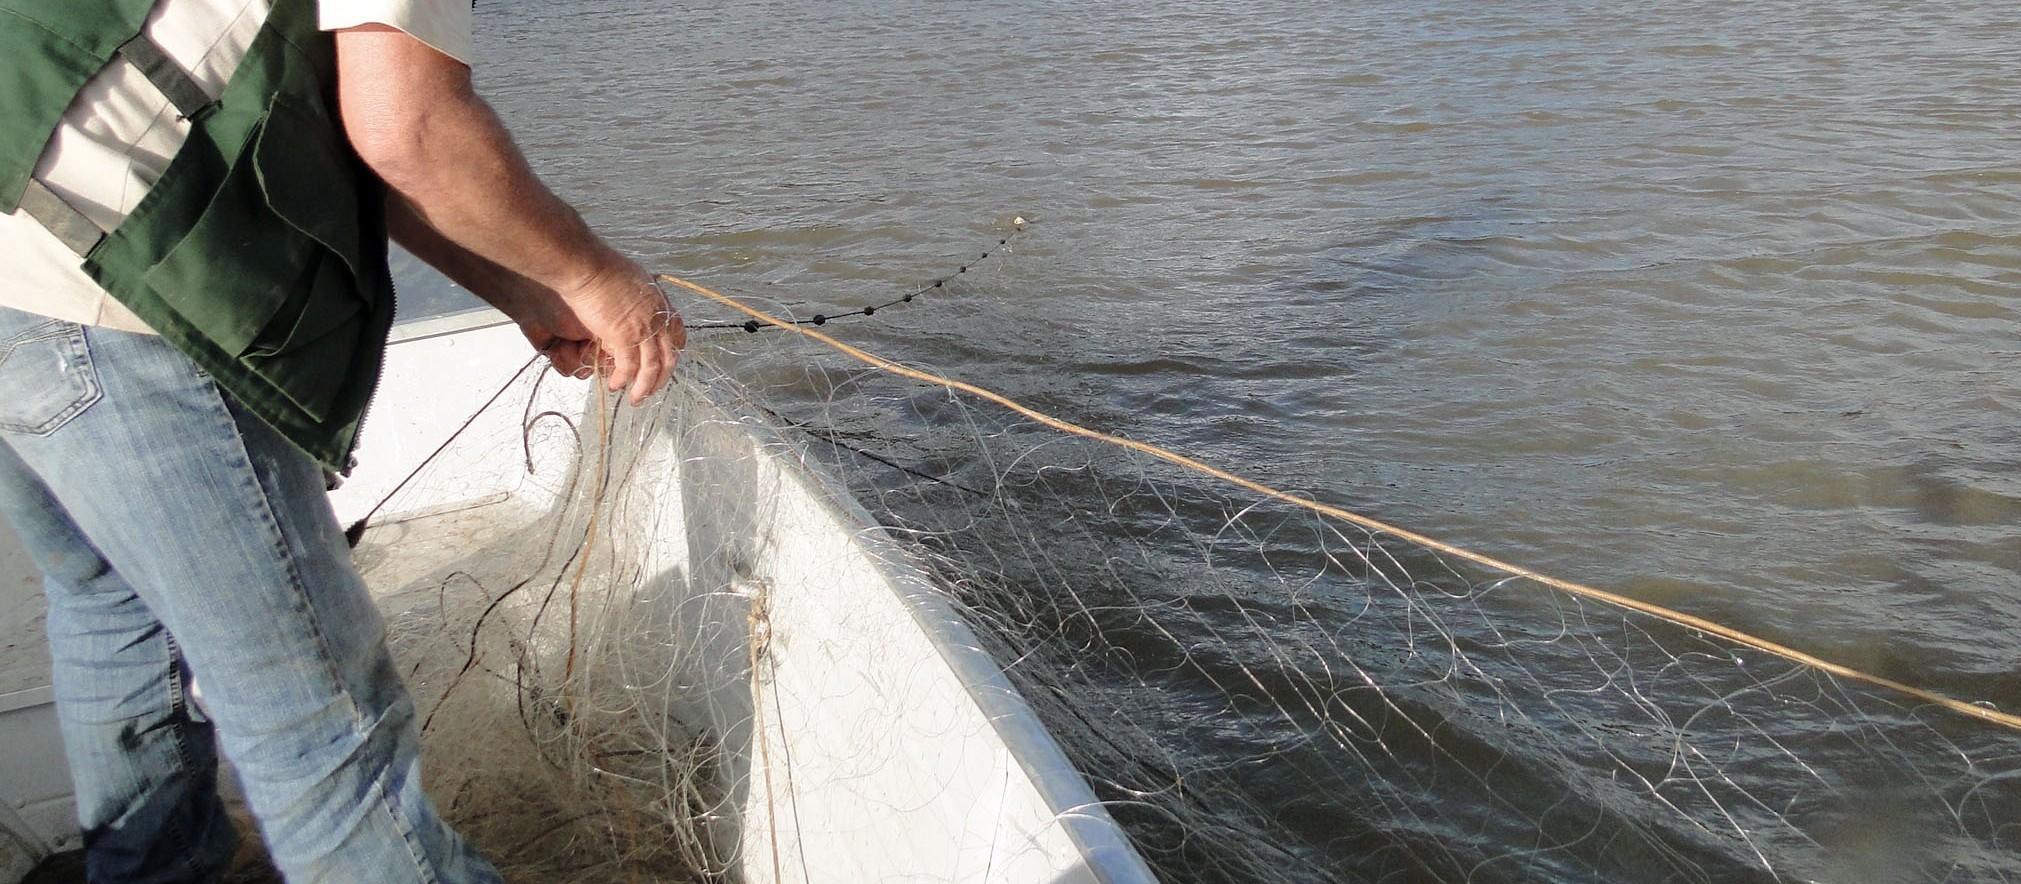 Pesca no Rio Paraná será liberada nessa quinta-feira (1º)